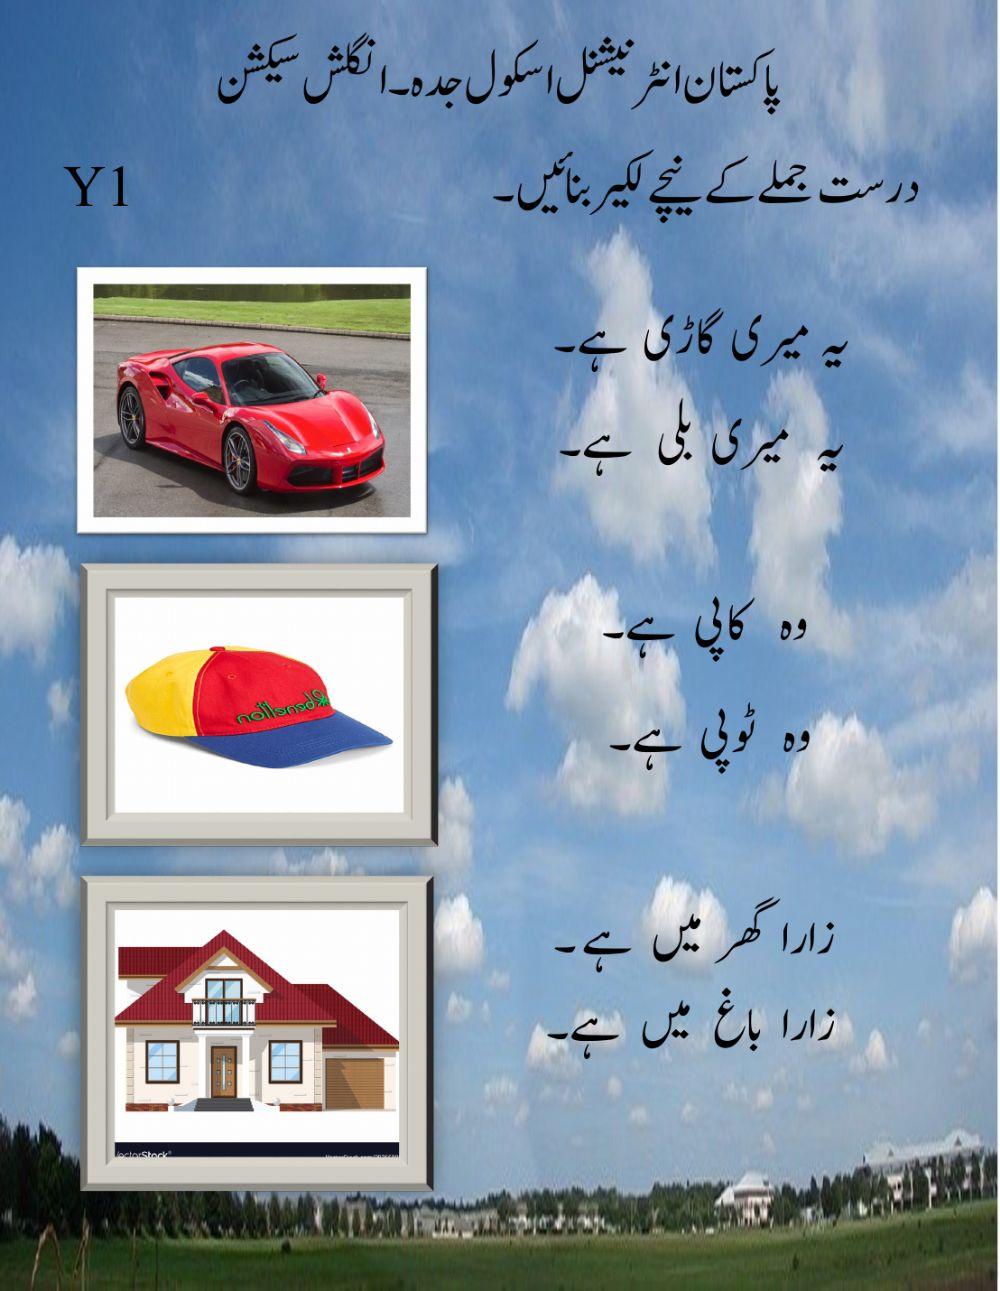 Urdu worksheet 1